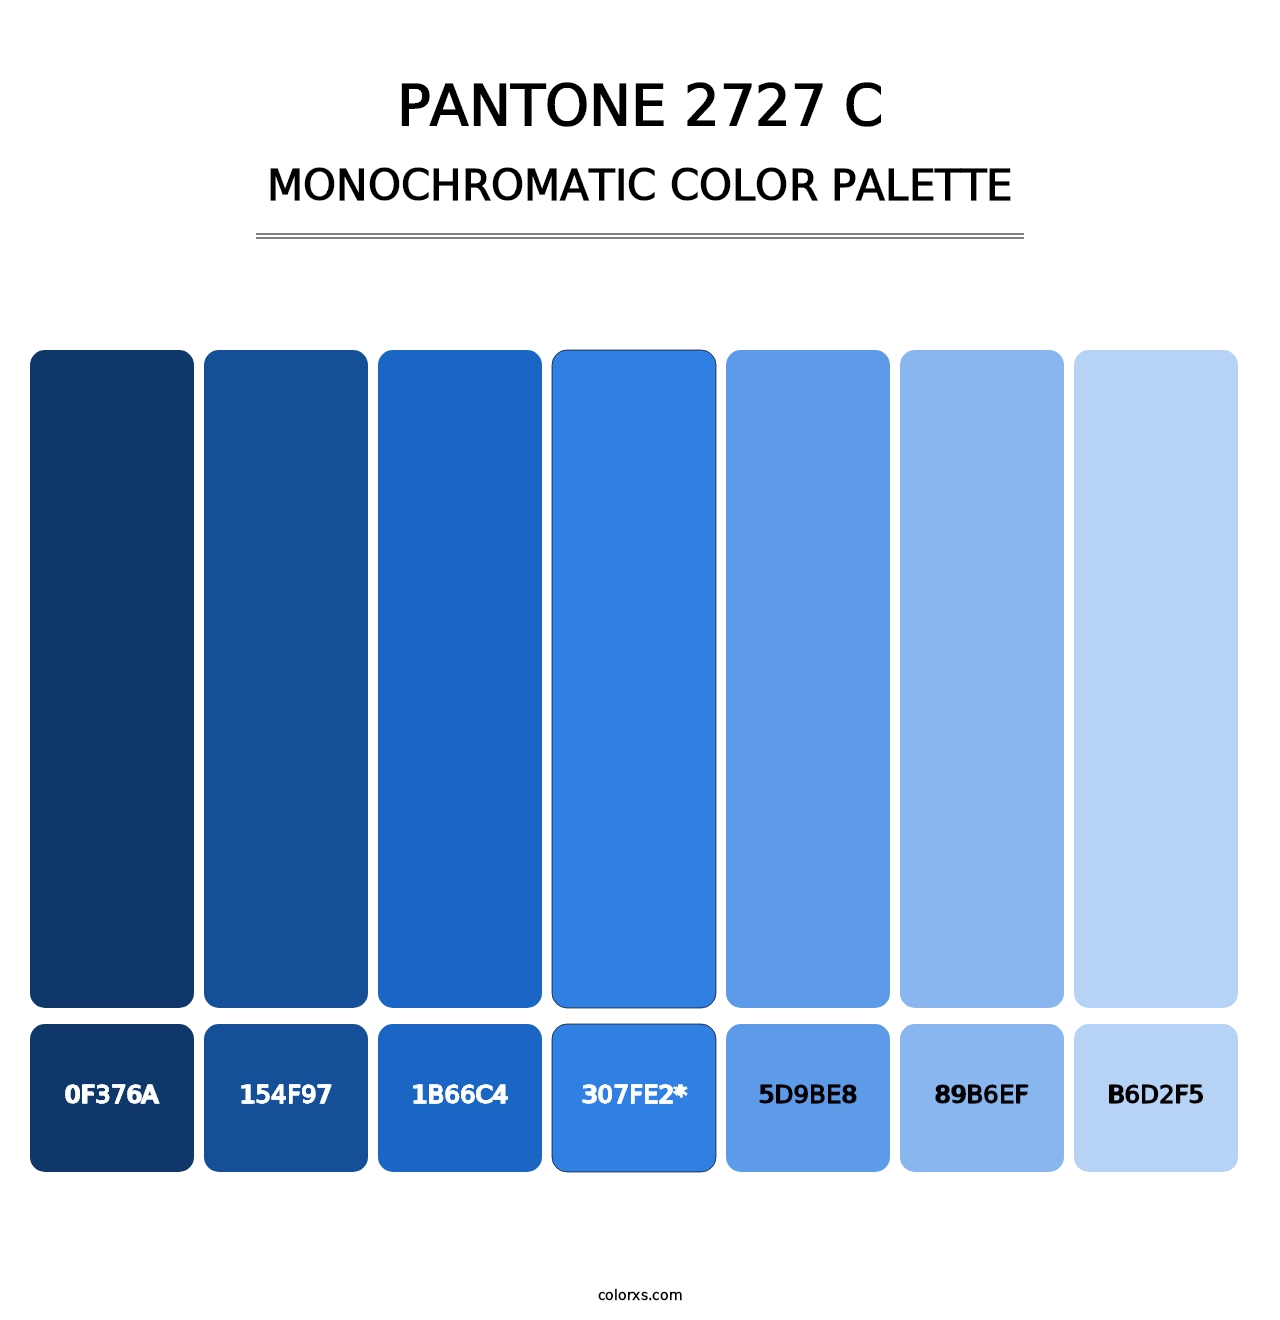 PANTONE 2727 C - Monochromatic Color Palette